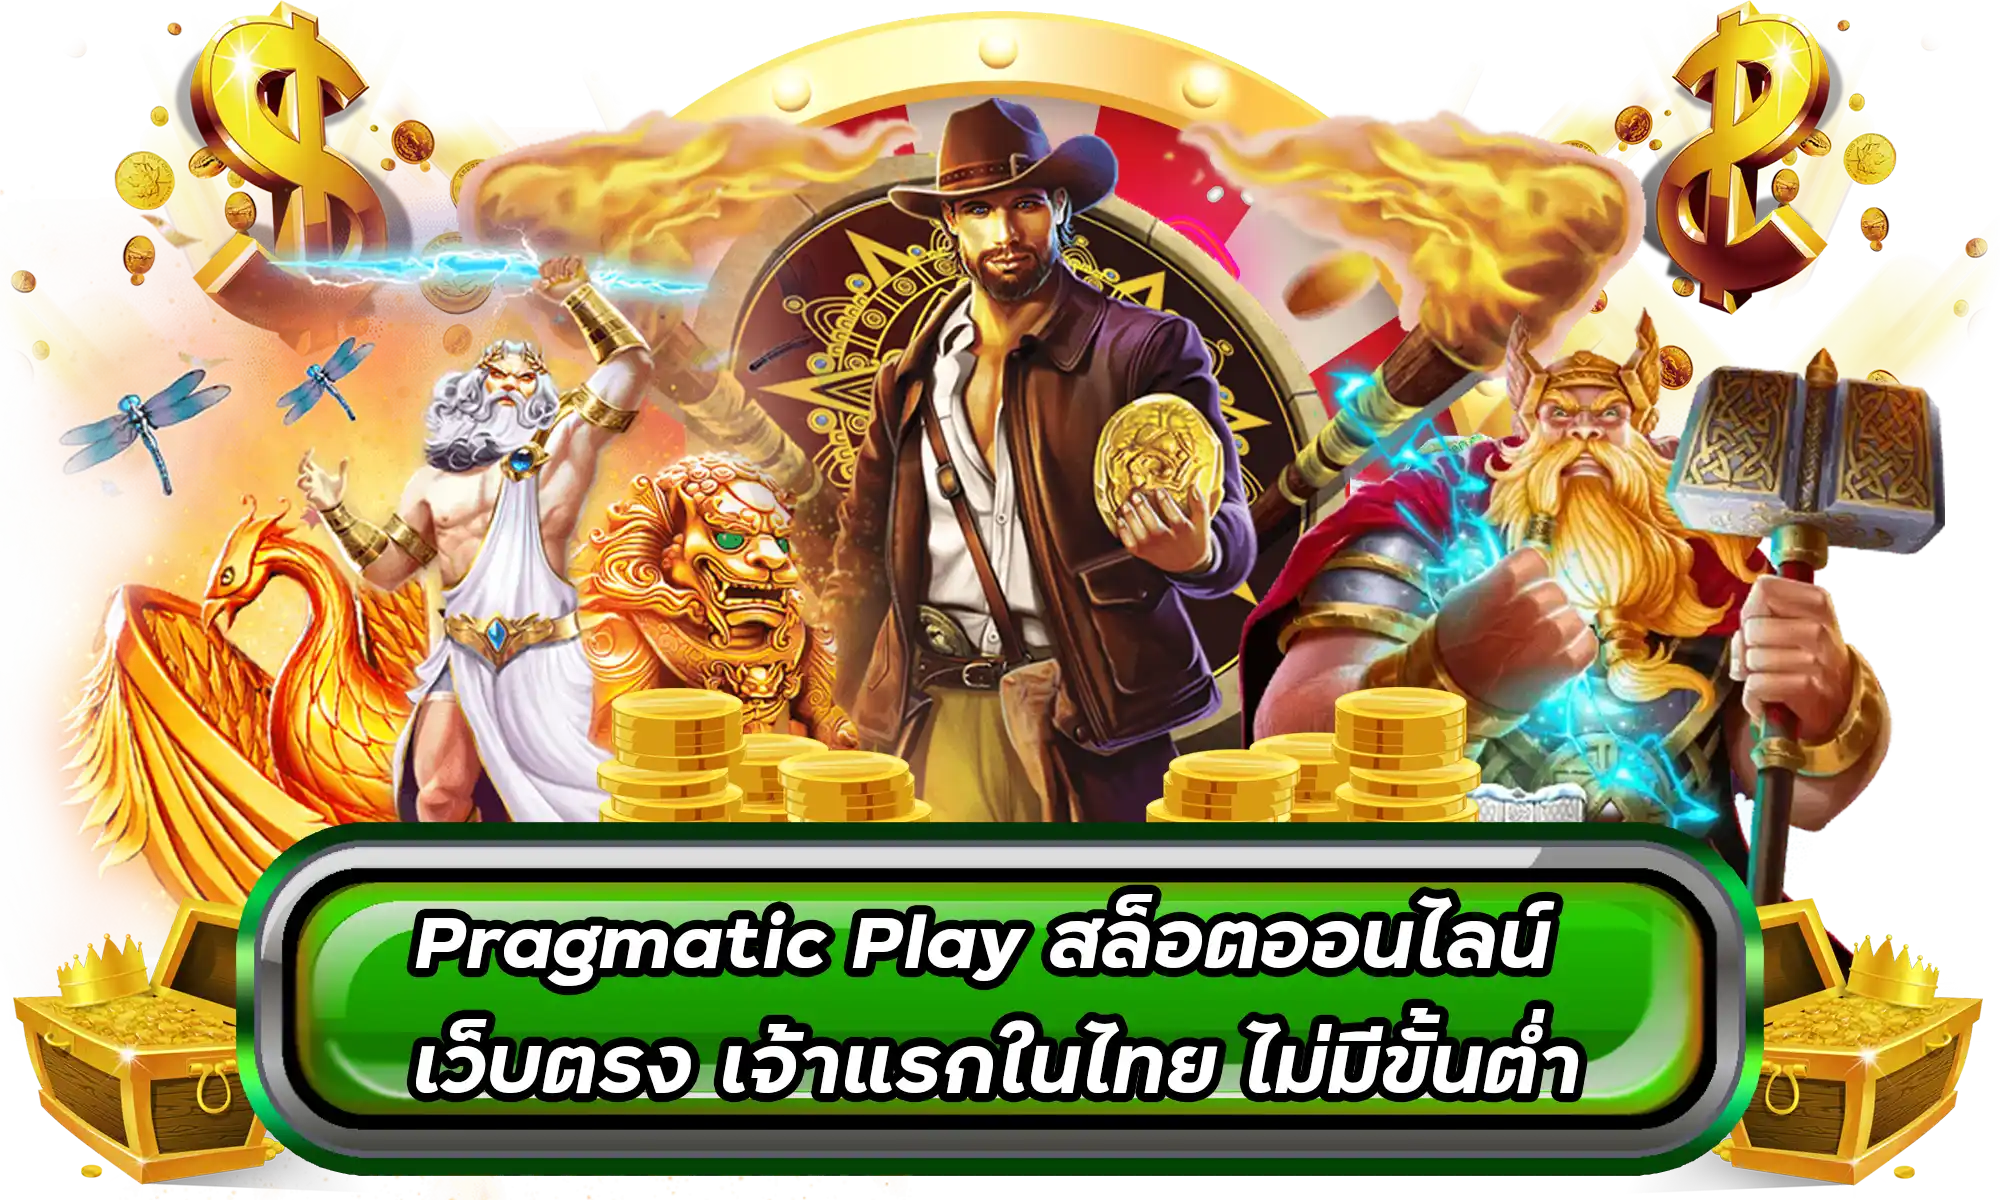 Pragmatic Play สล็อตออนไลน์ เว็บตรง เจ้าแรกในไทย ไม่มีขั้นต่ำ